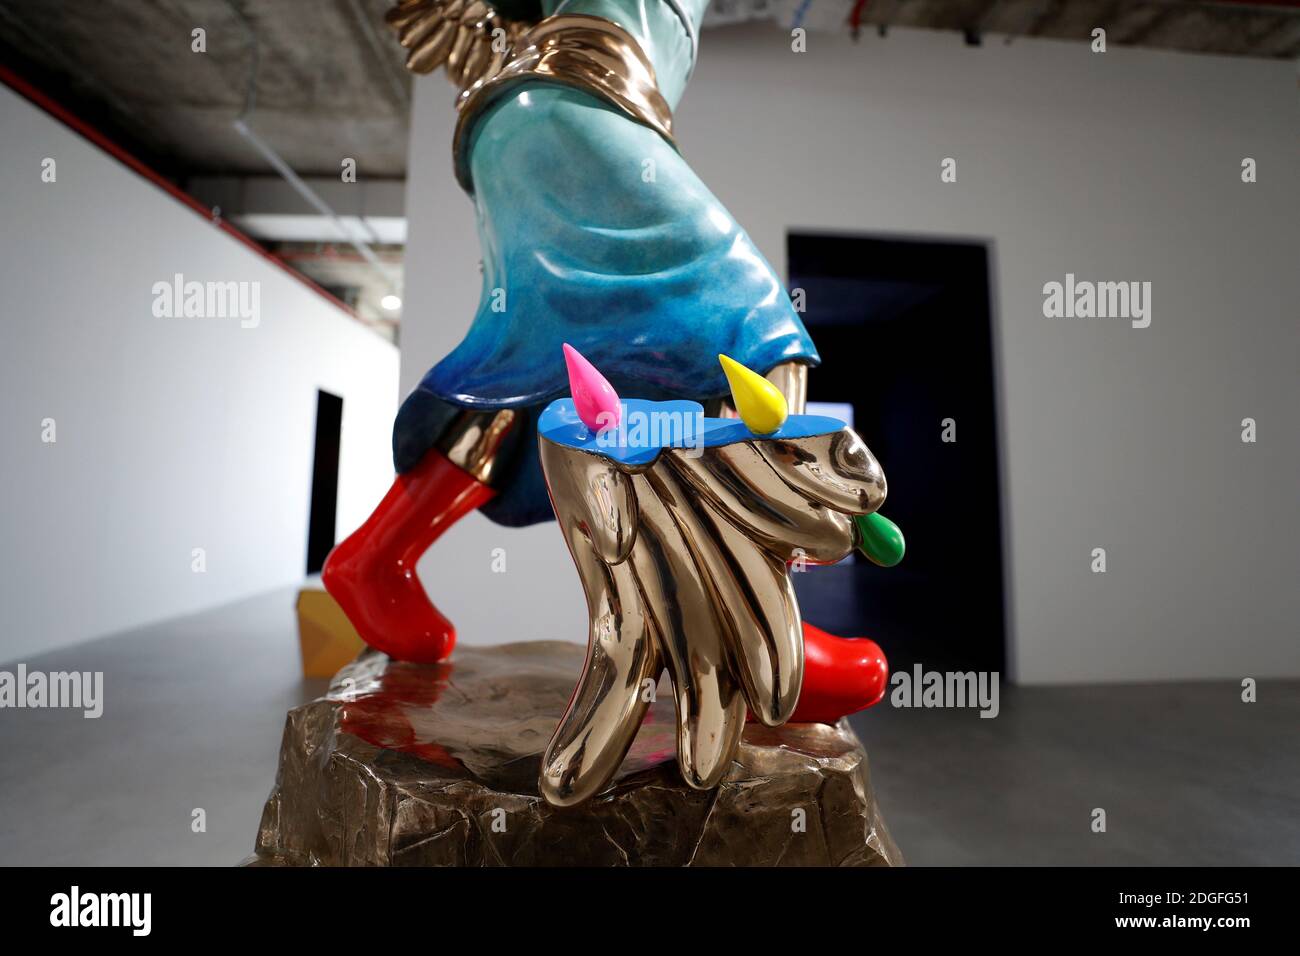 Ein zerbrochener Flügel der Skulptur der thailändischen Künstlerin Yuree  Kensaku mit dem Titel 'Broken Victoria', inspiriert von der Statue des  geflügelten Sieges von Samothrace der griechischen Göttin Nike, ist während  einer Ausstellung